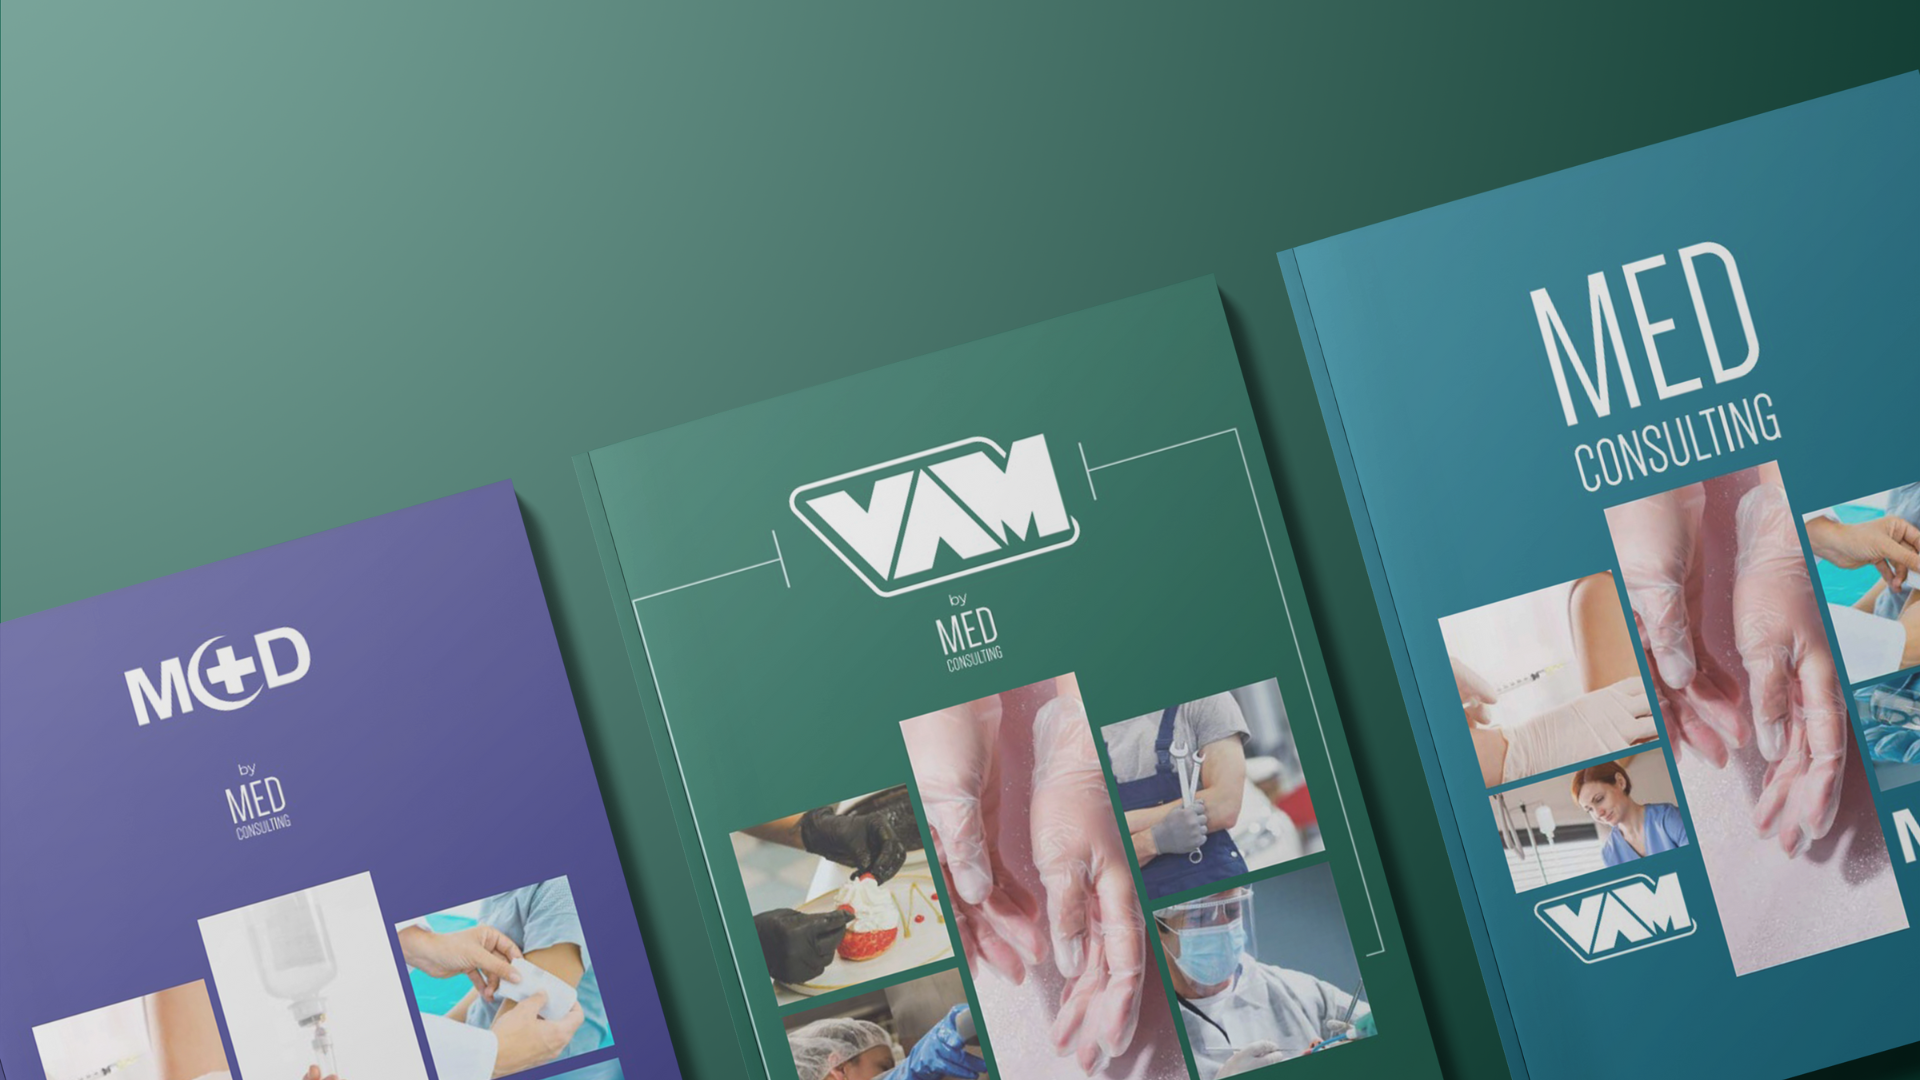 cataloghi VAM e M+D di Med Consulting con le ultime novità sui guanti monouso e da lavoro, sull'abbigliamento professionale e sulle forniture mediche